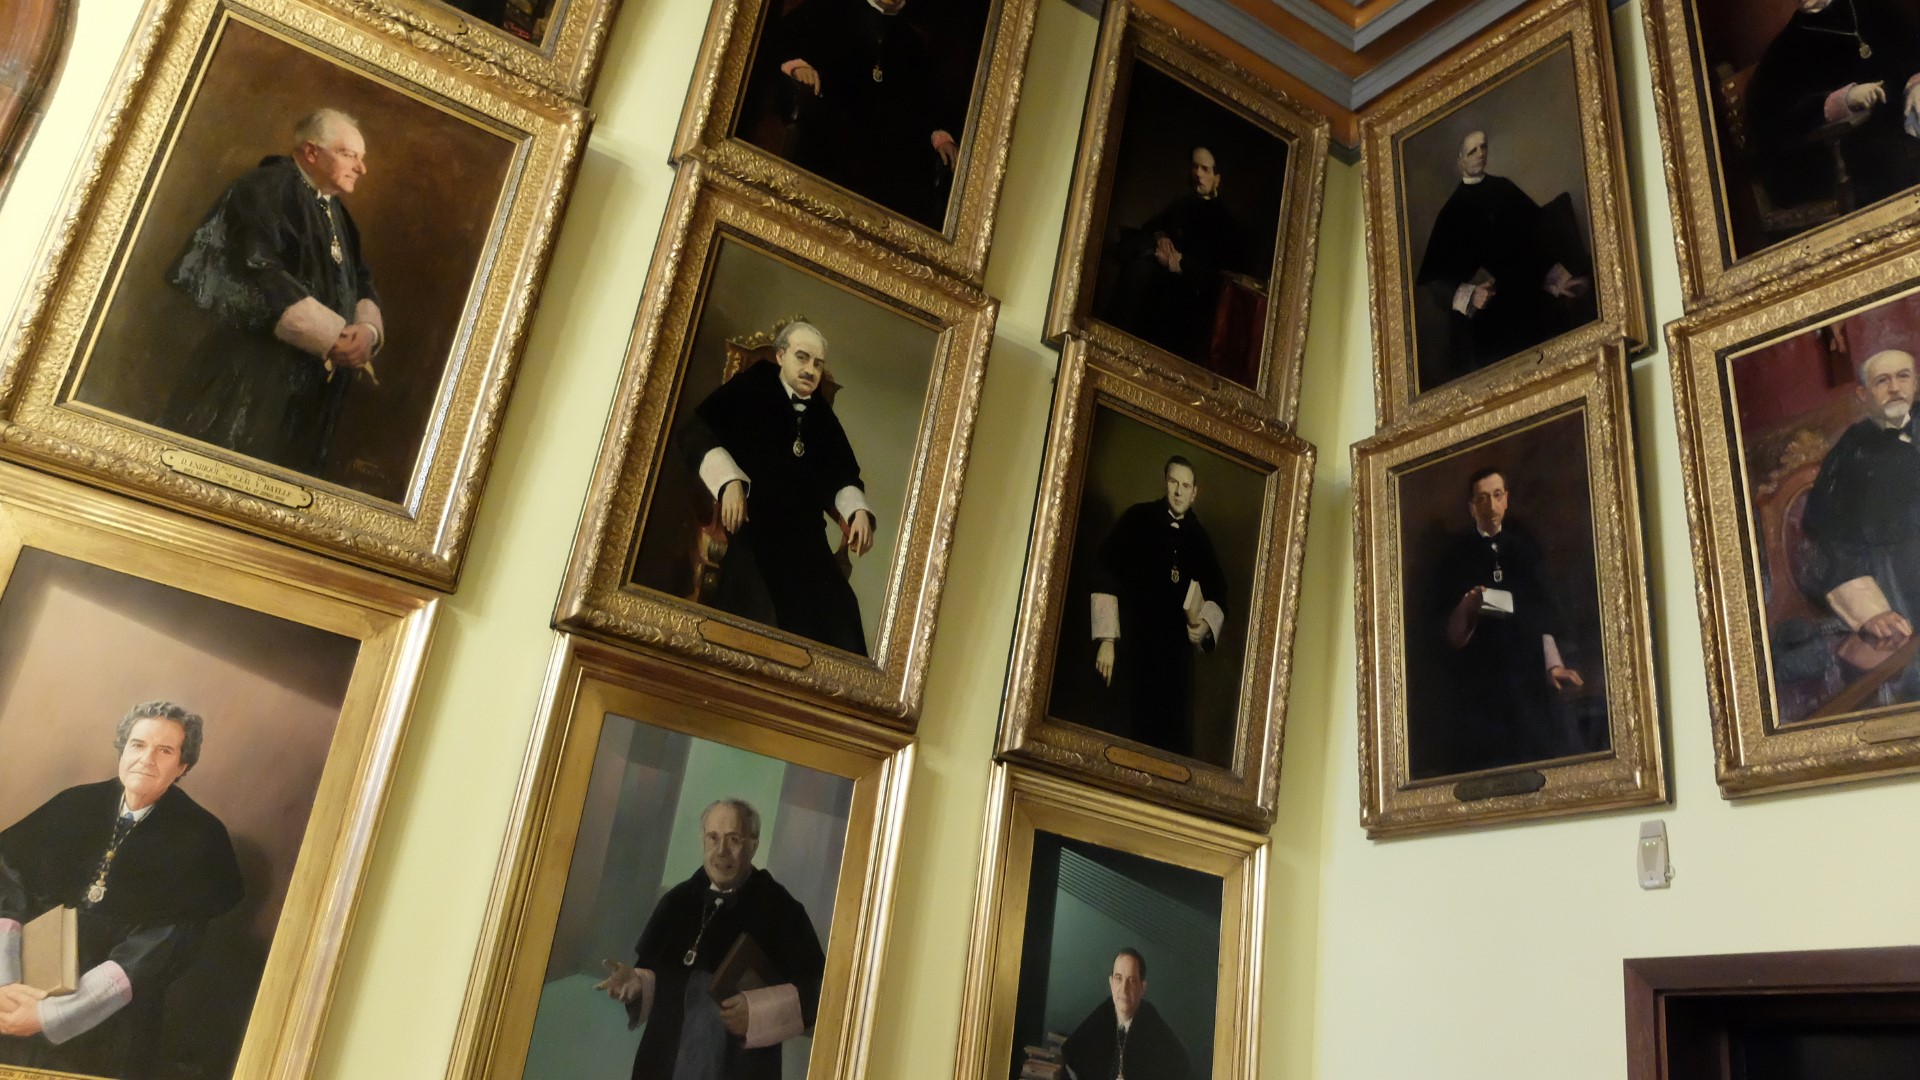 Galeria de retrats dels rectors